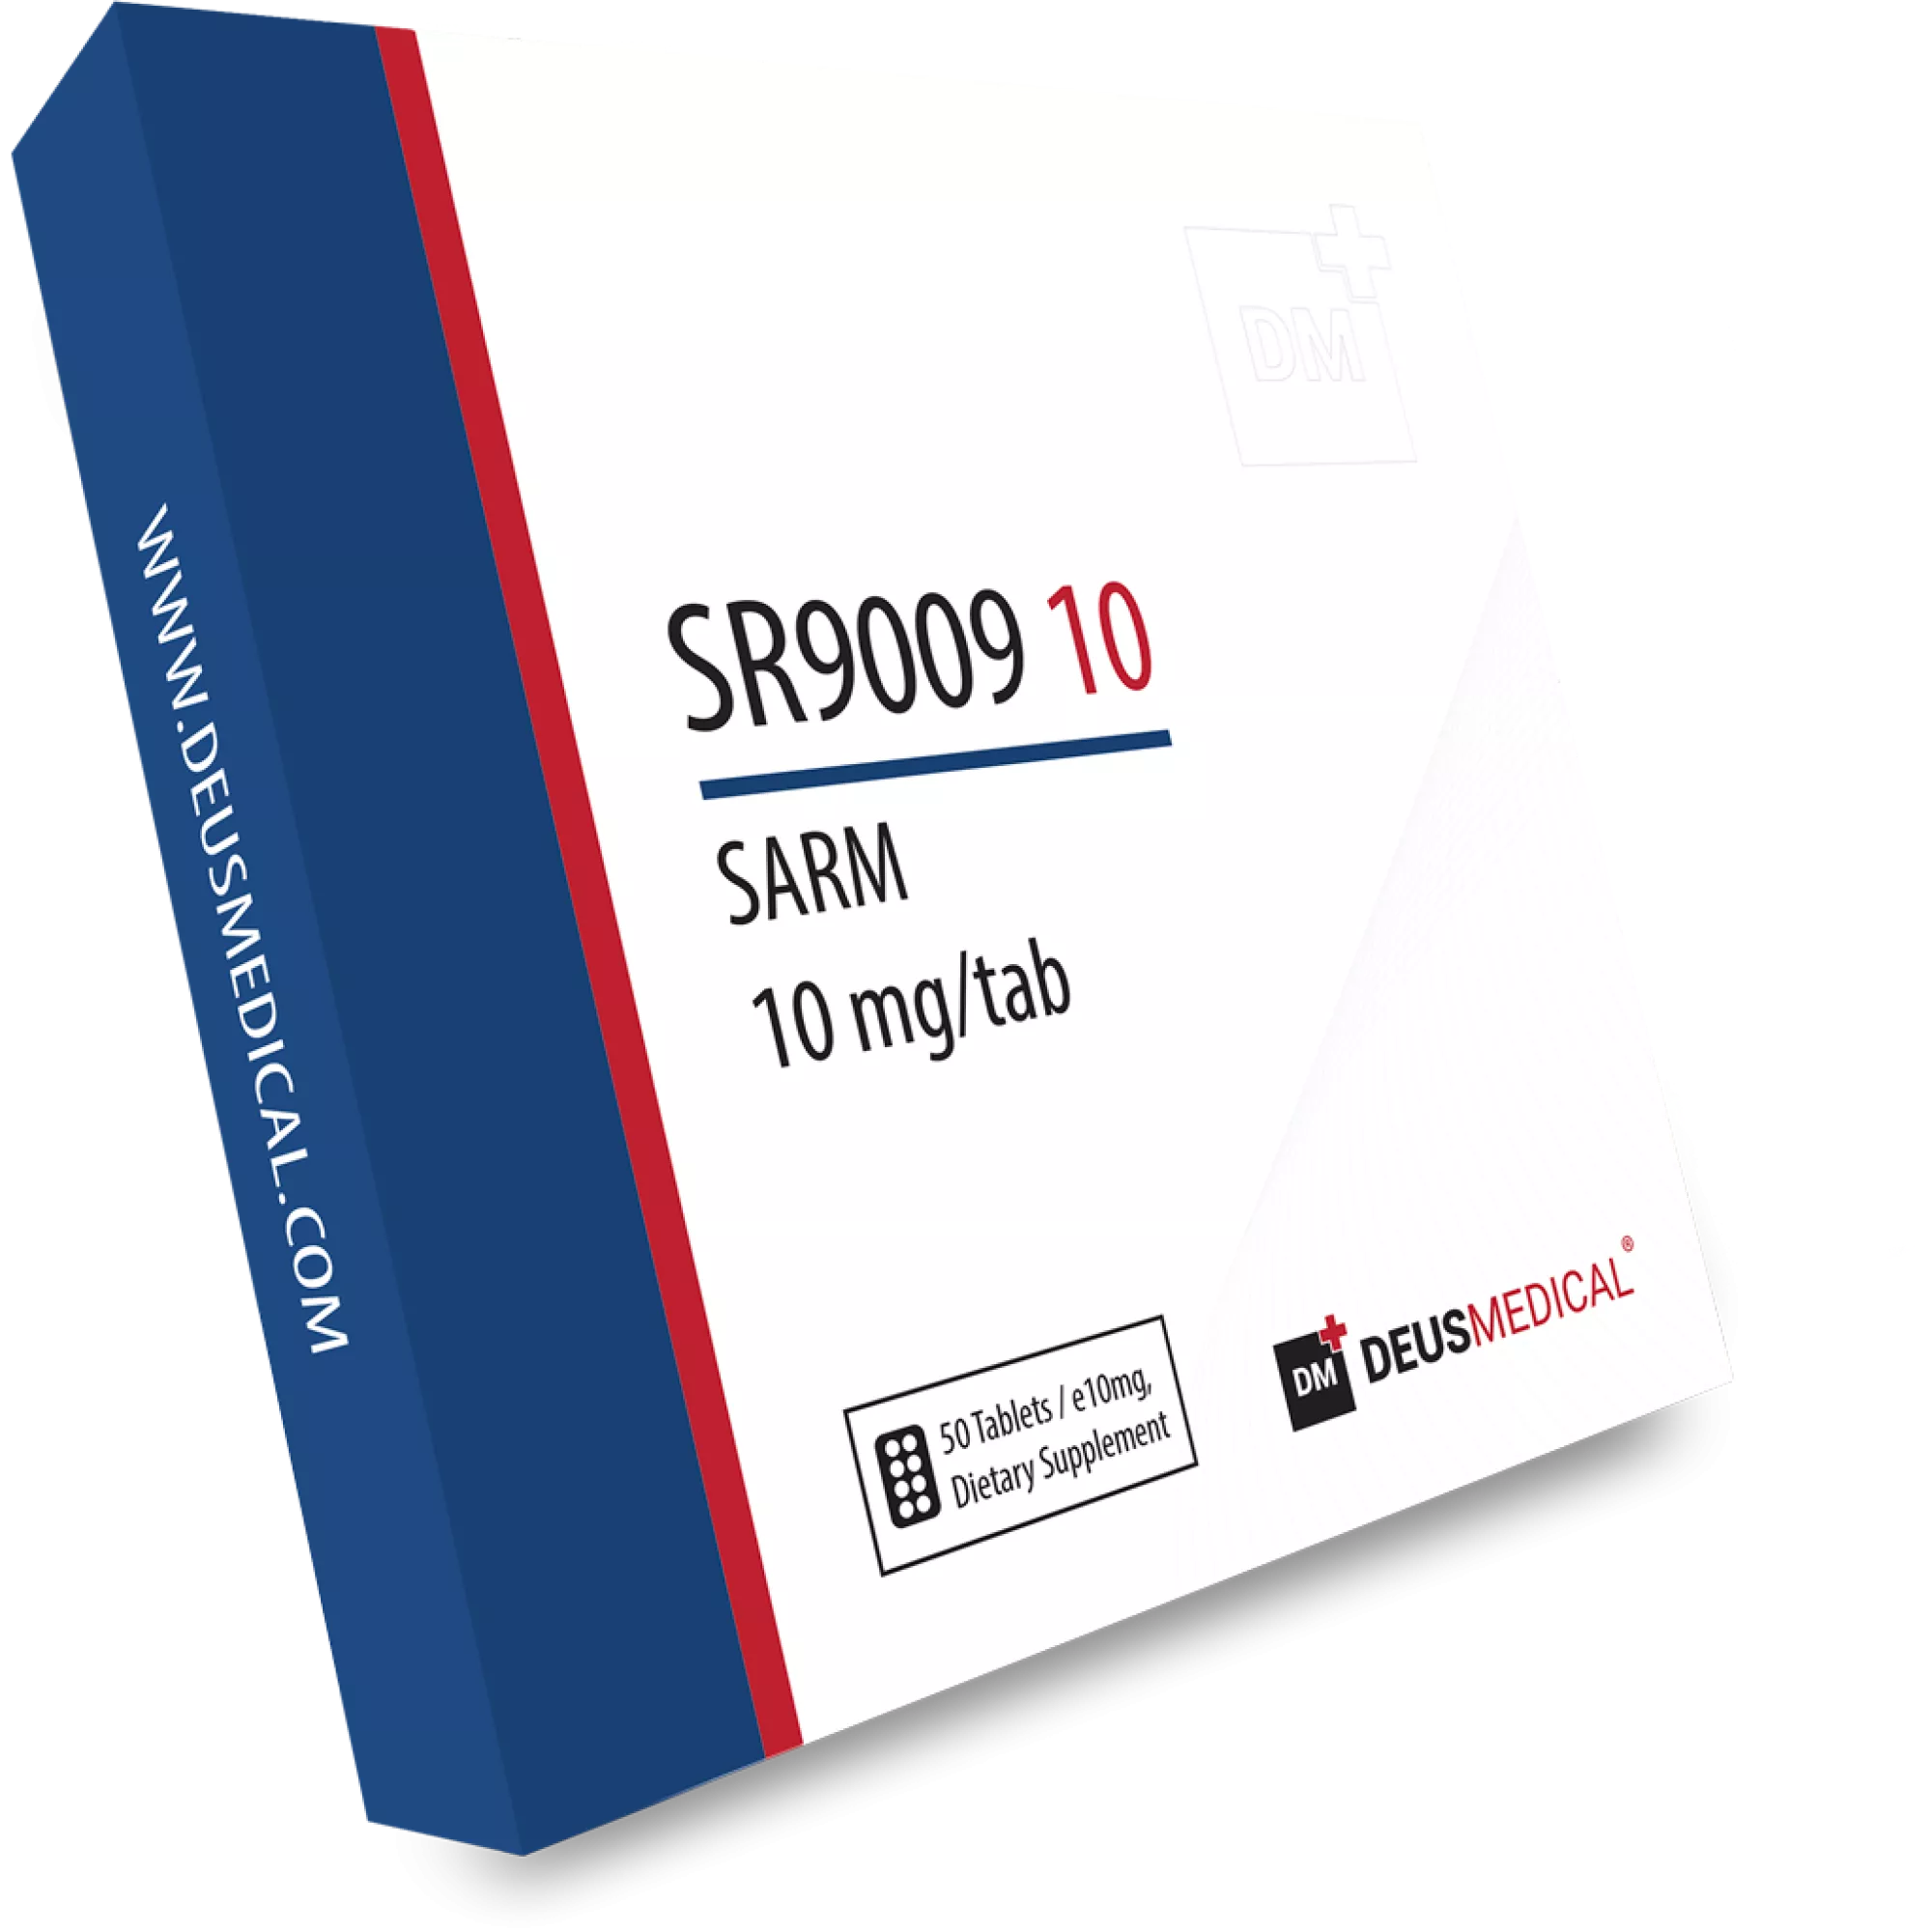 SR9009 10 (Stenabolic), Deus Medical, Buy Steroids Online - www.deuspower.shop